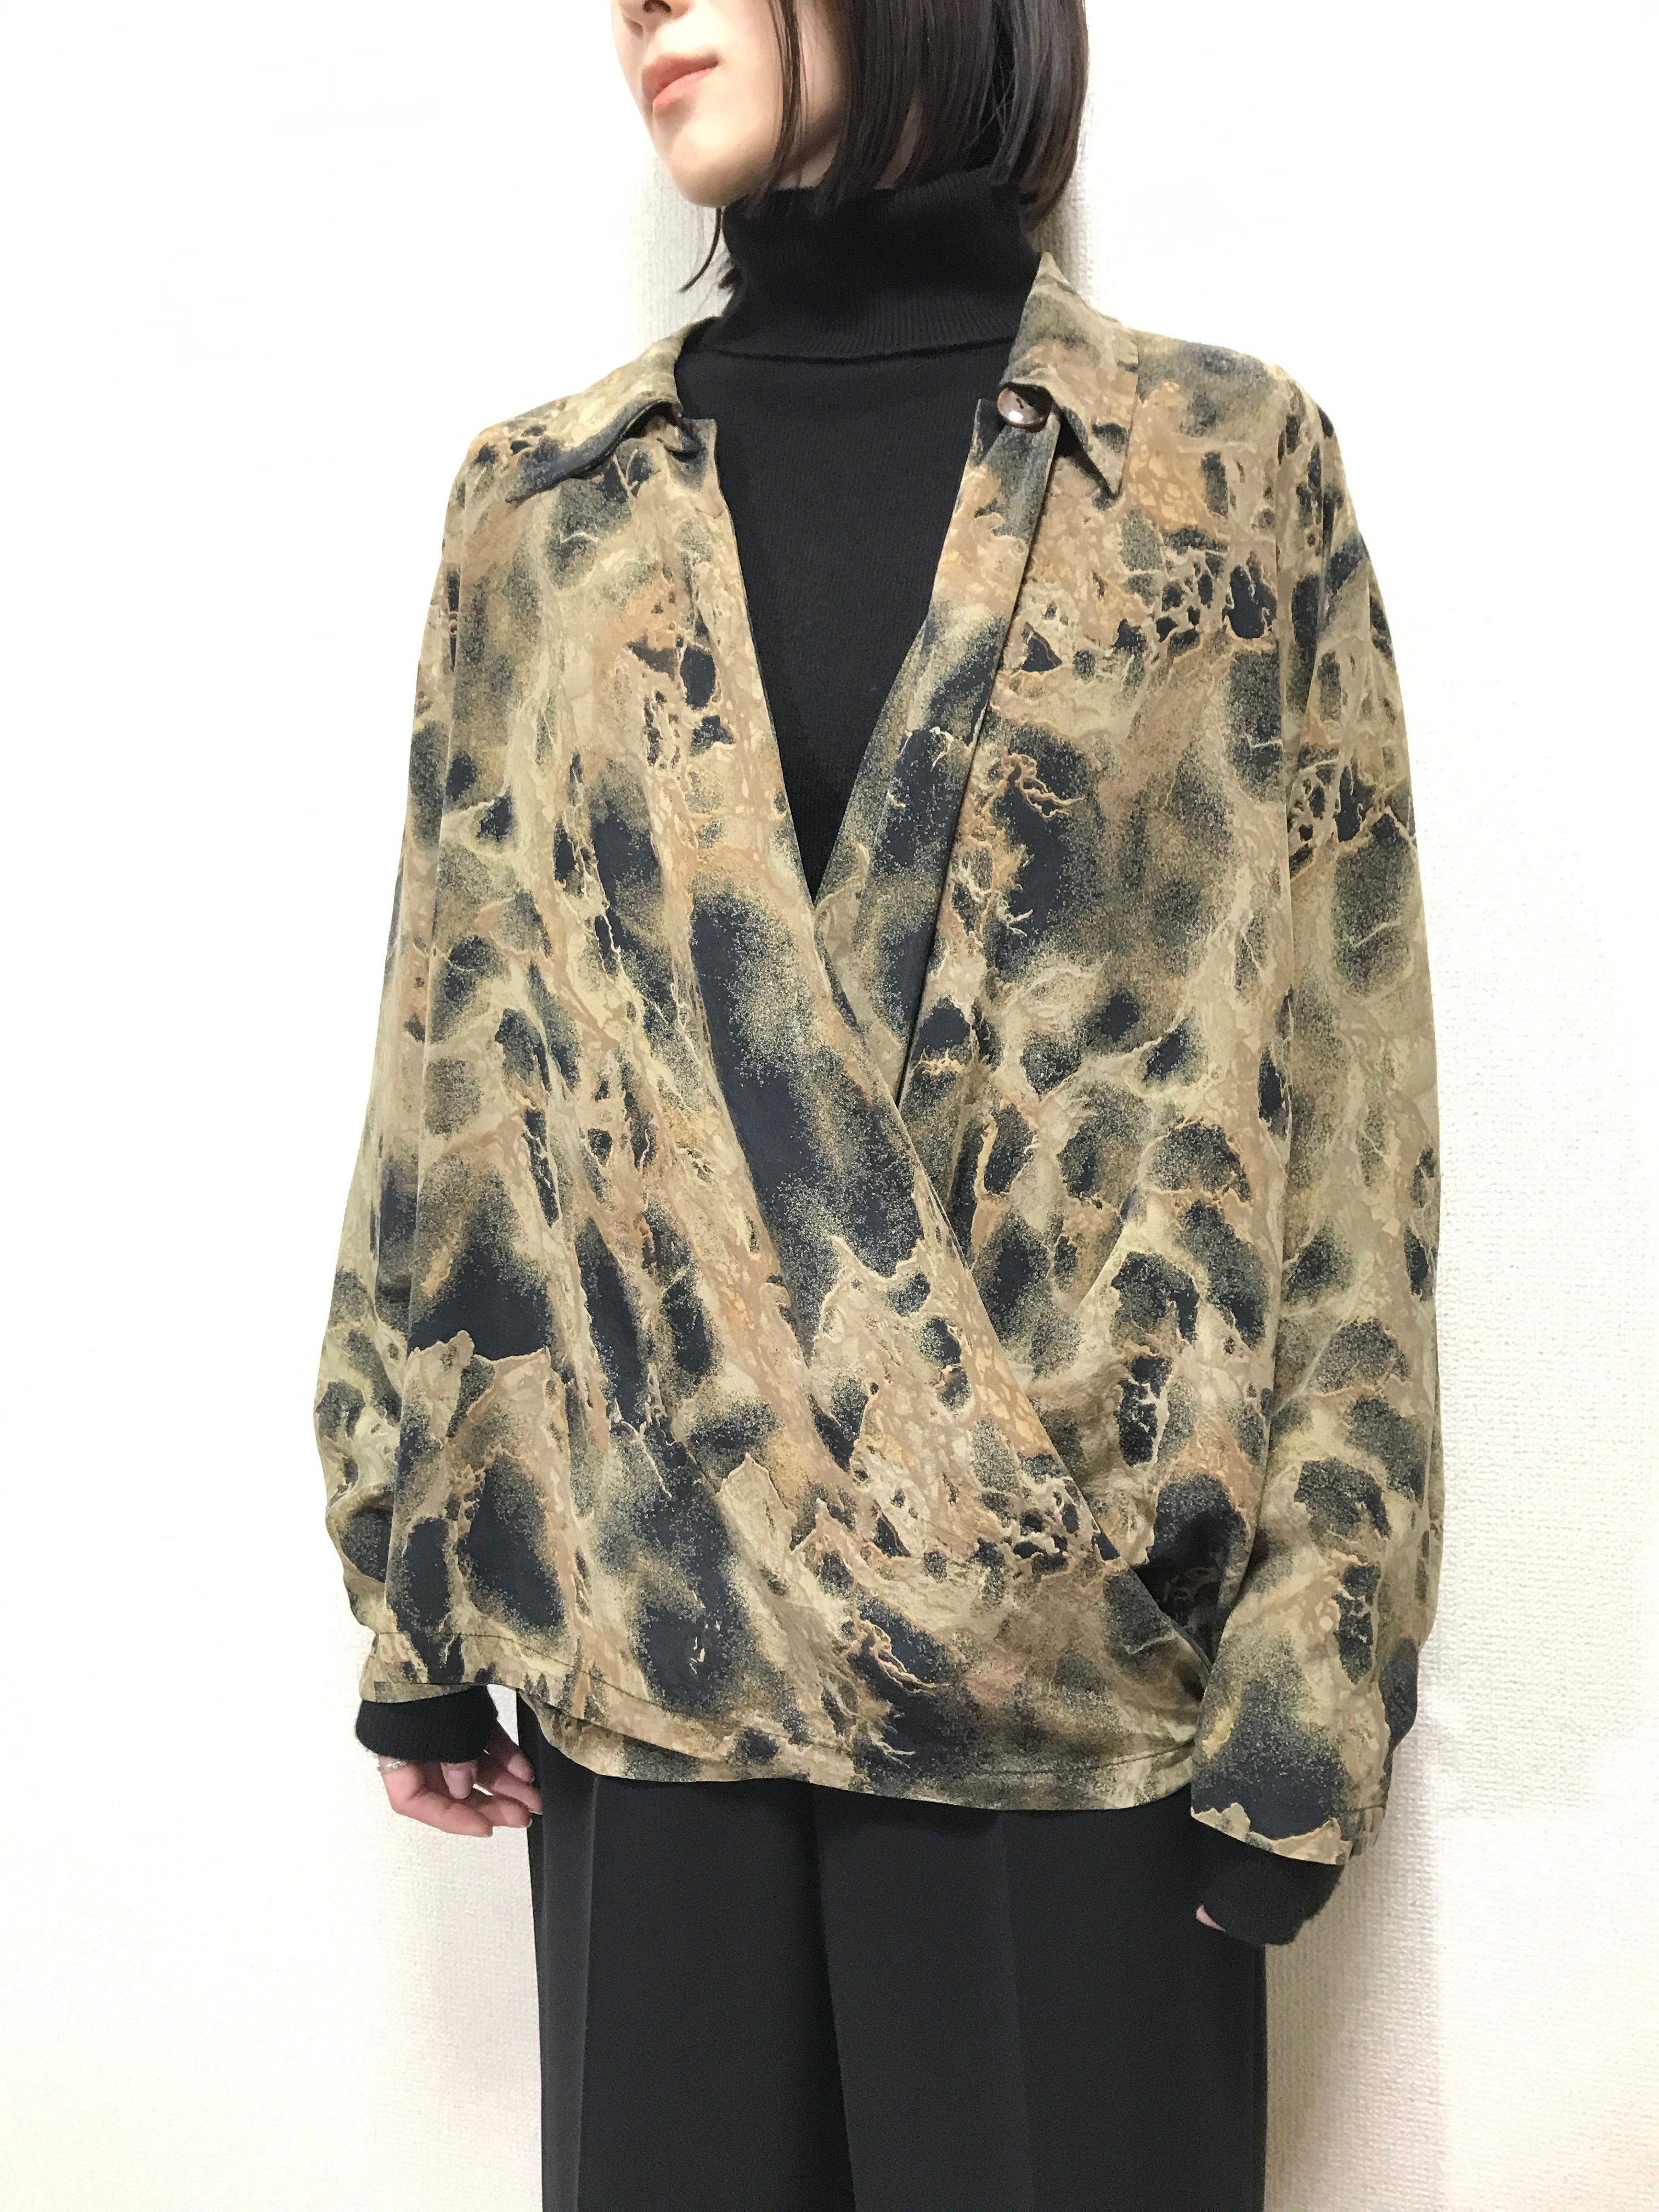 old Pierre Cardin silk pattern blouse